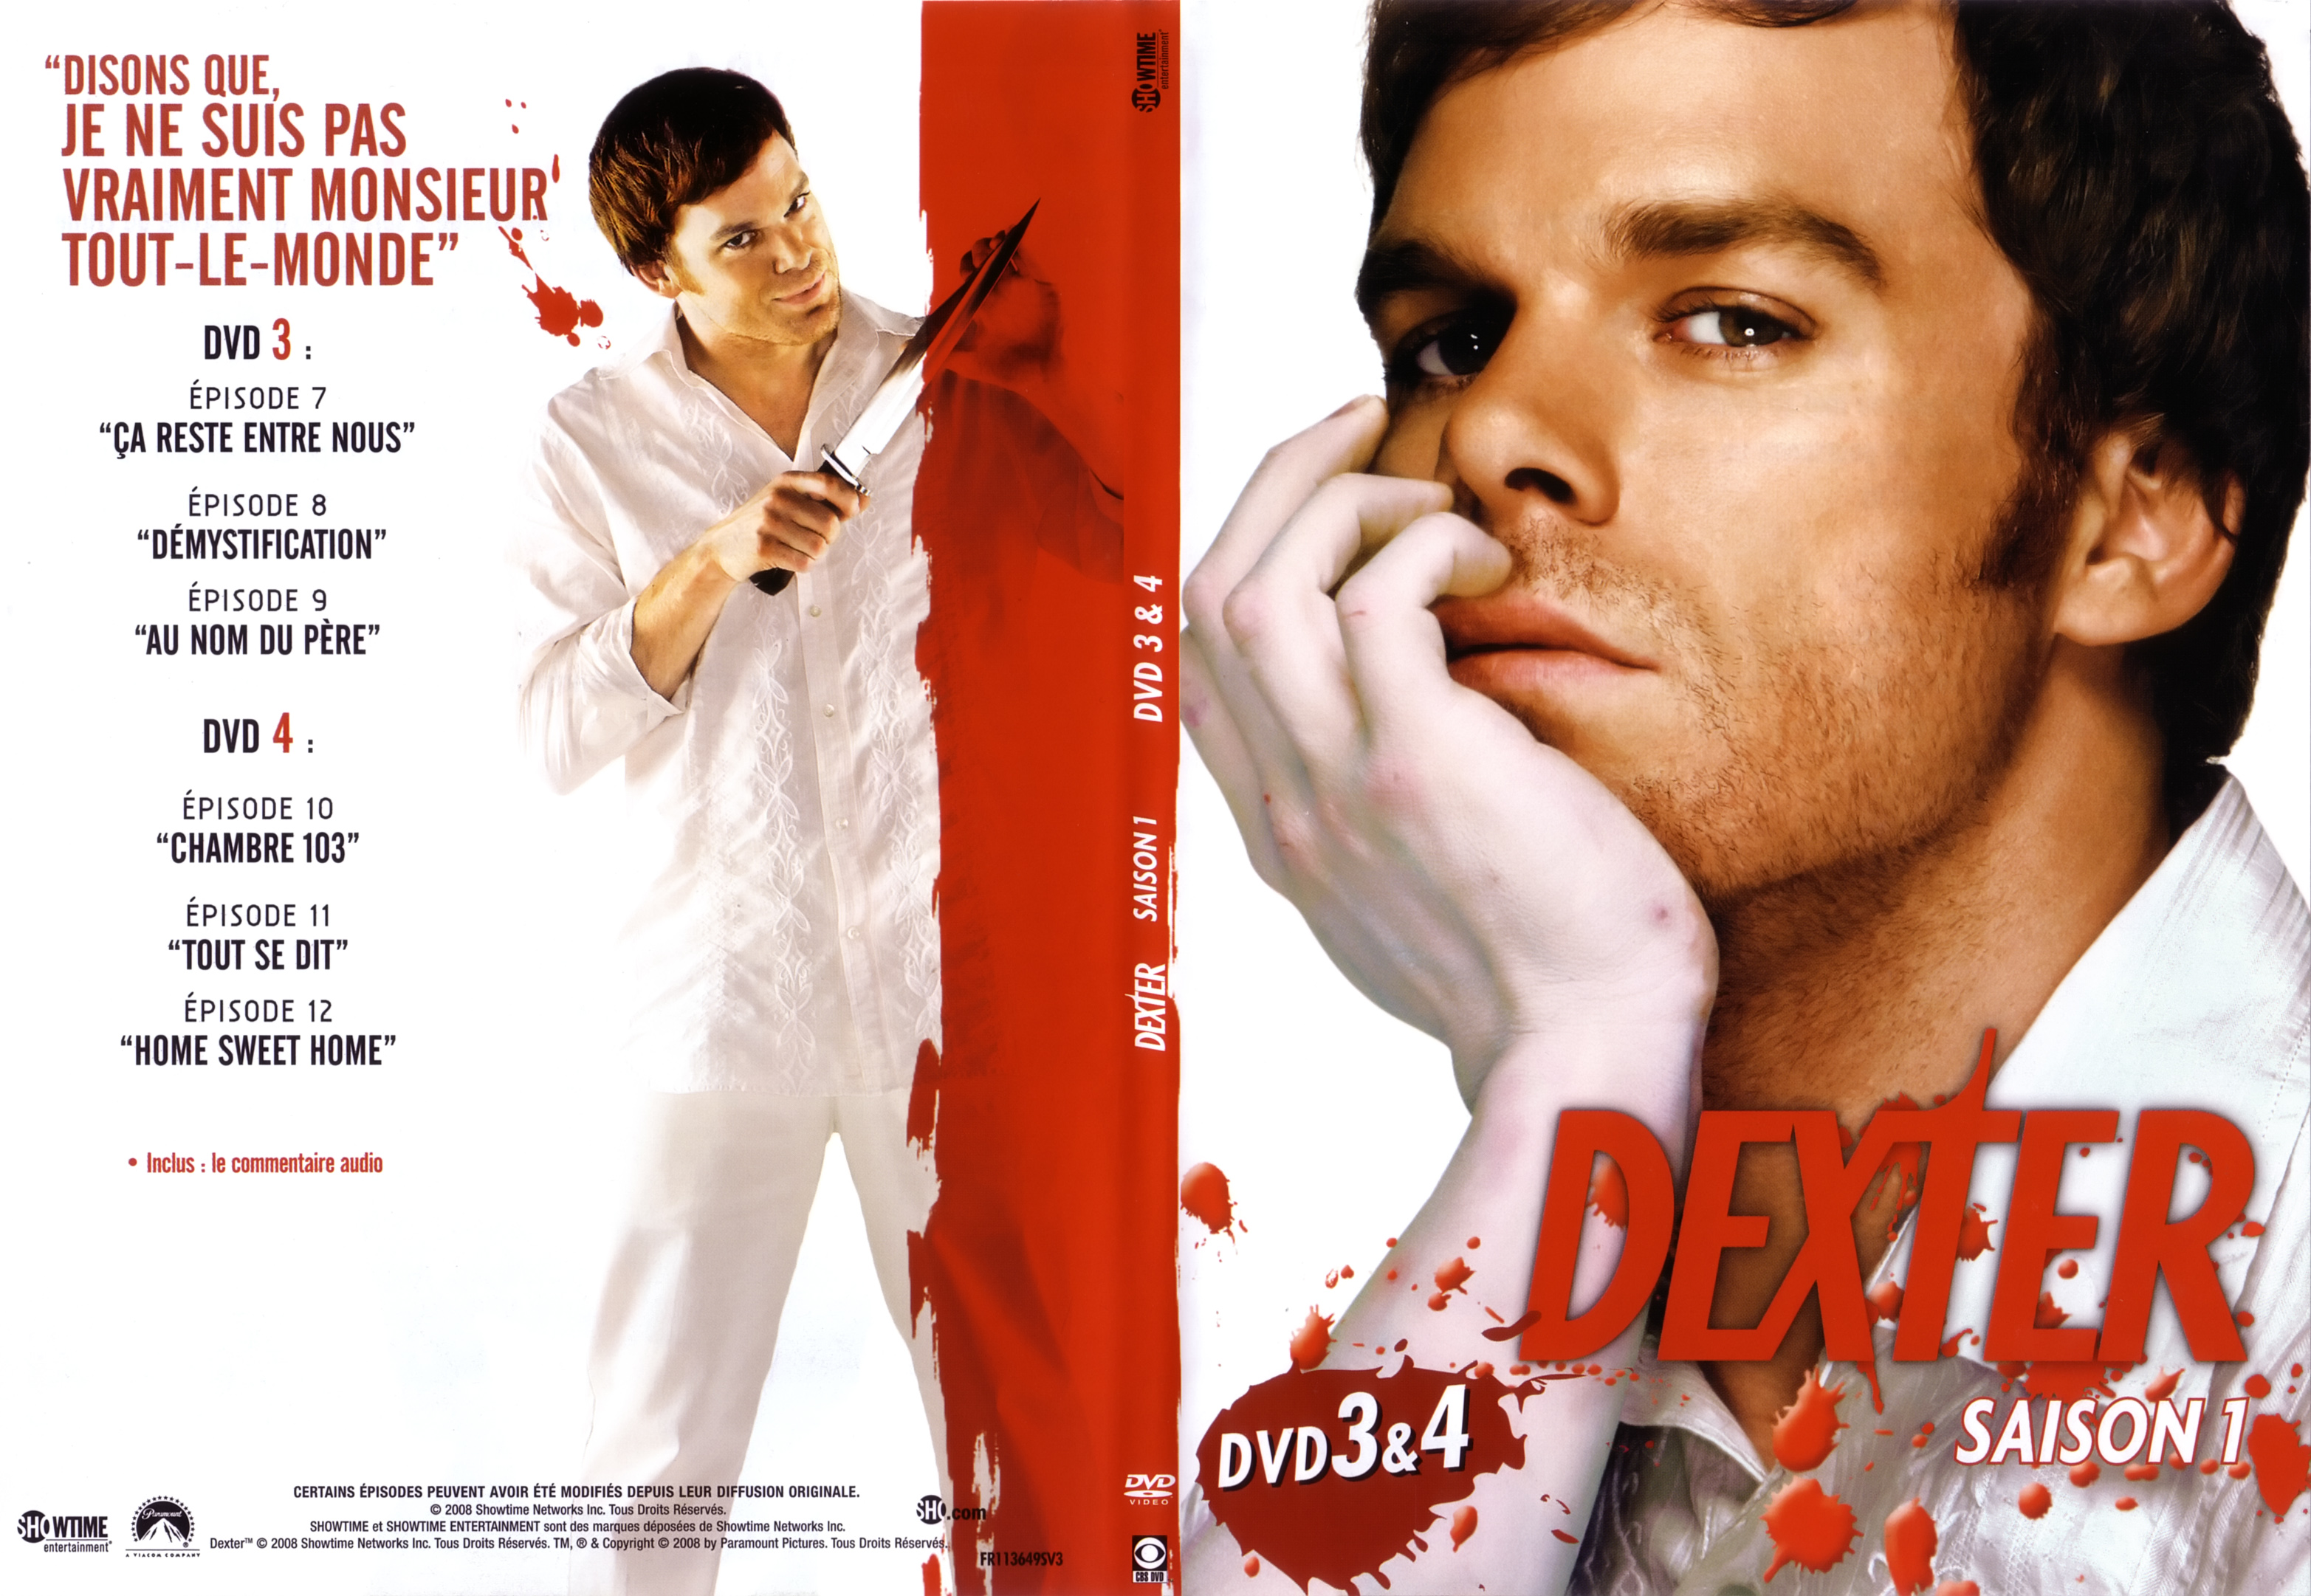 Jaquette DVD Dexter saison 1 DVD 3